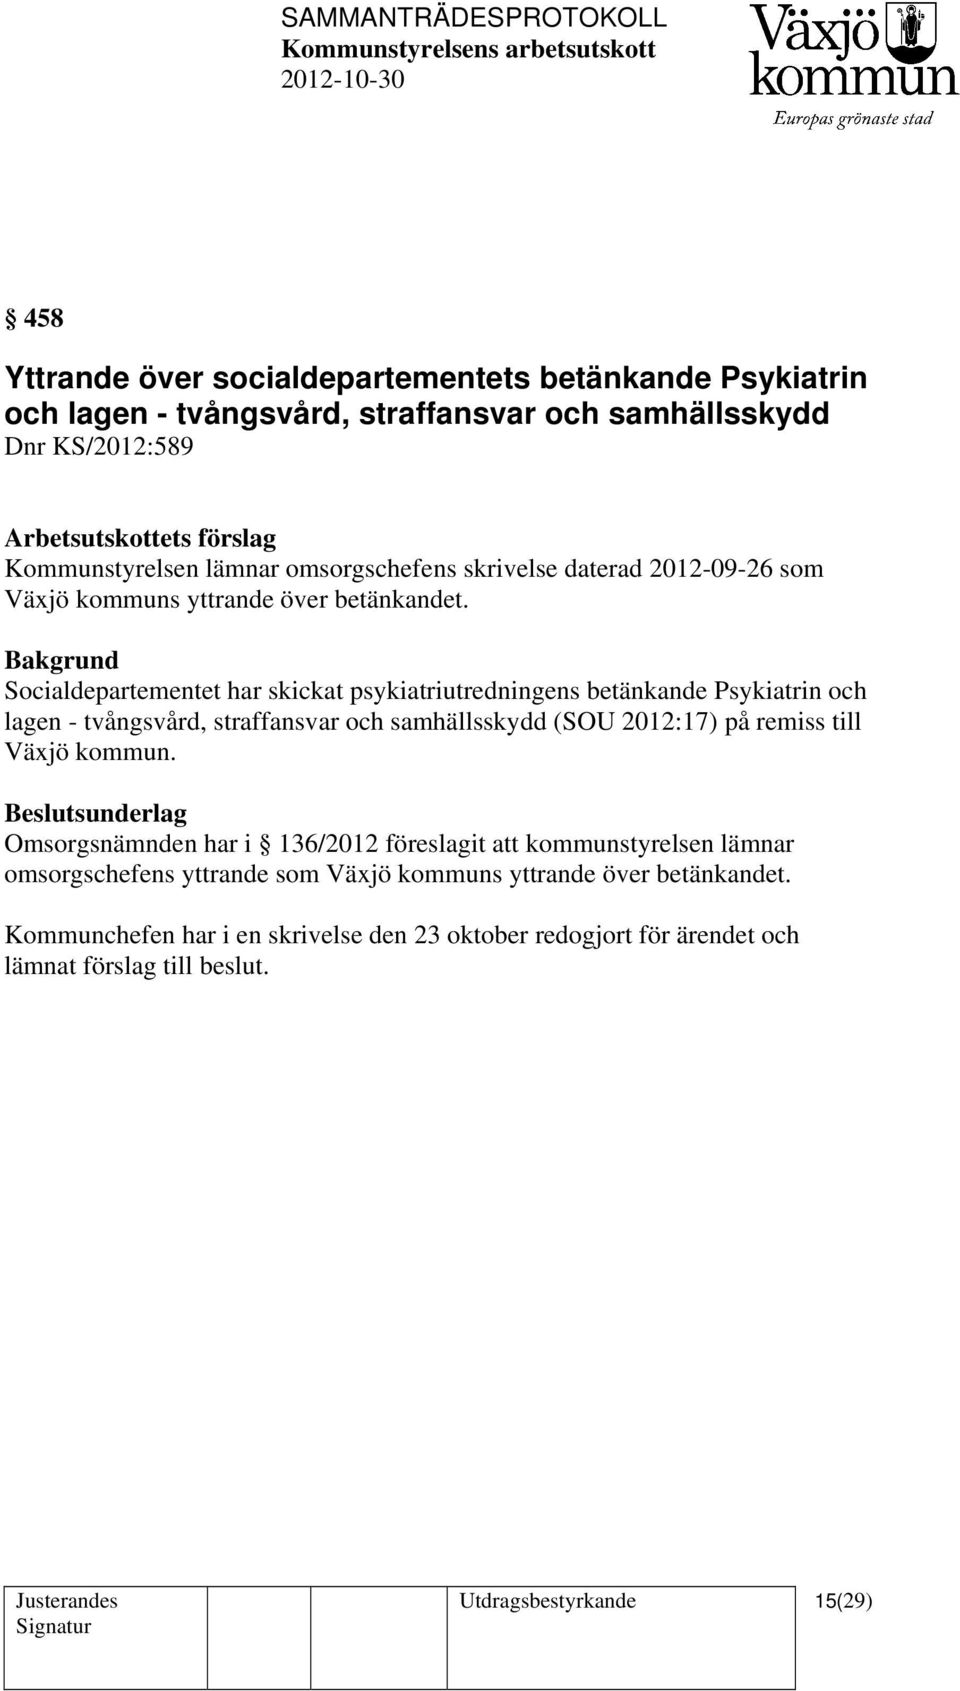 Socialdepartementet har skickat psykiatriutredningens betänkande Psykiatrin och lagen - tvångsvård, straffansvar och samhällsskydd (SOU 2012:17) på remiss till Växjö kommun.